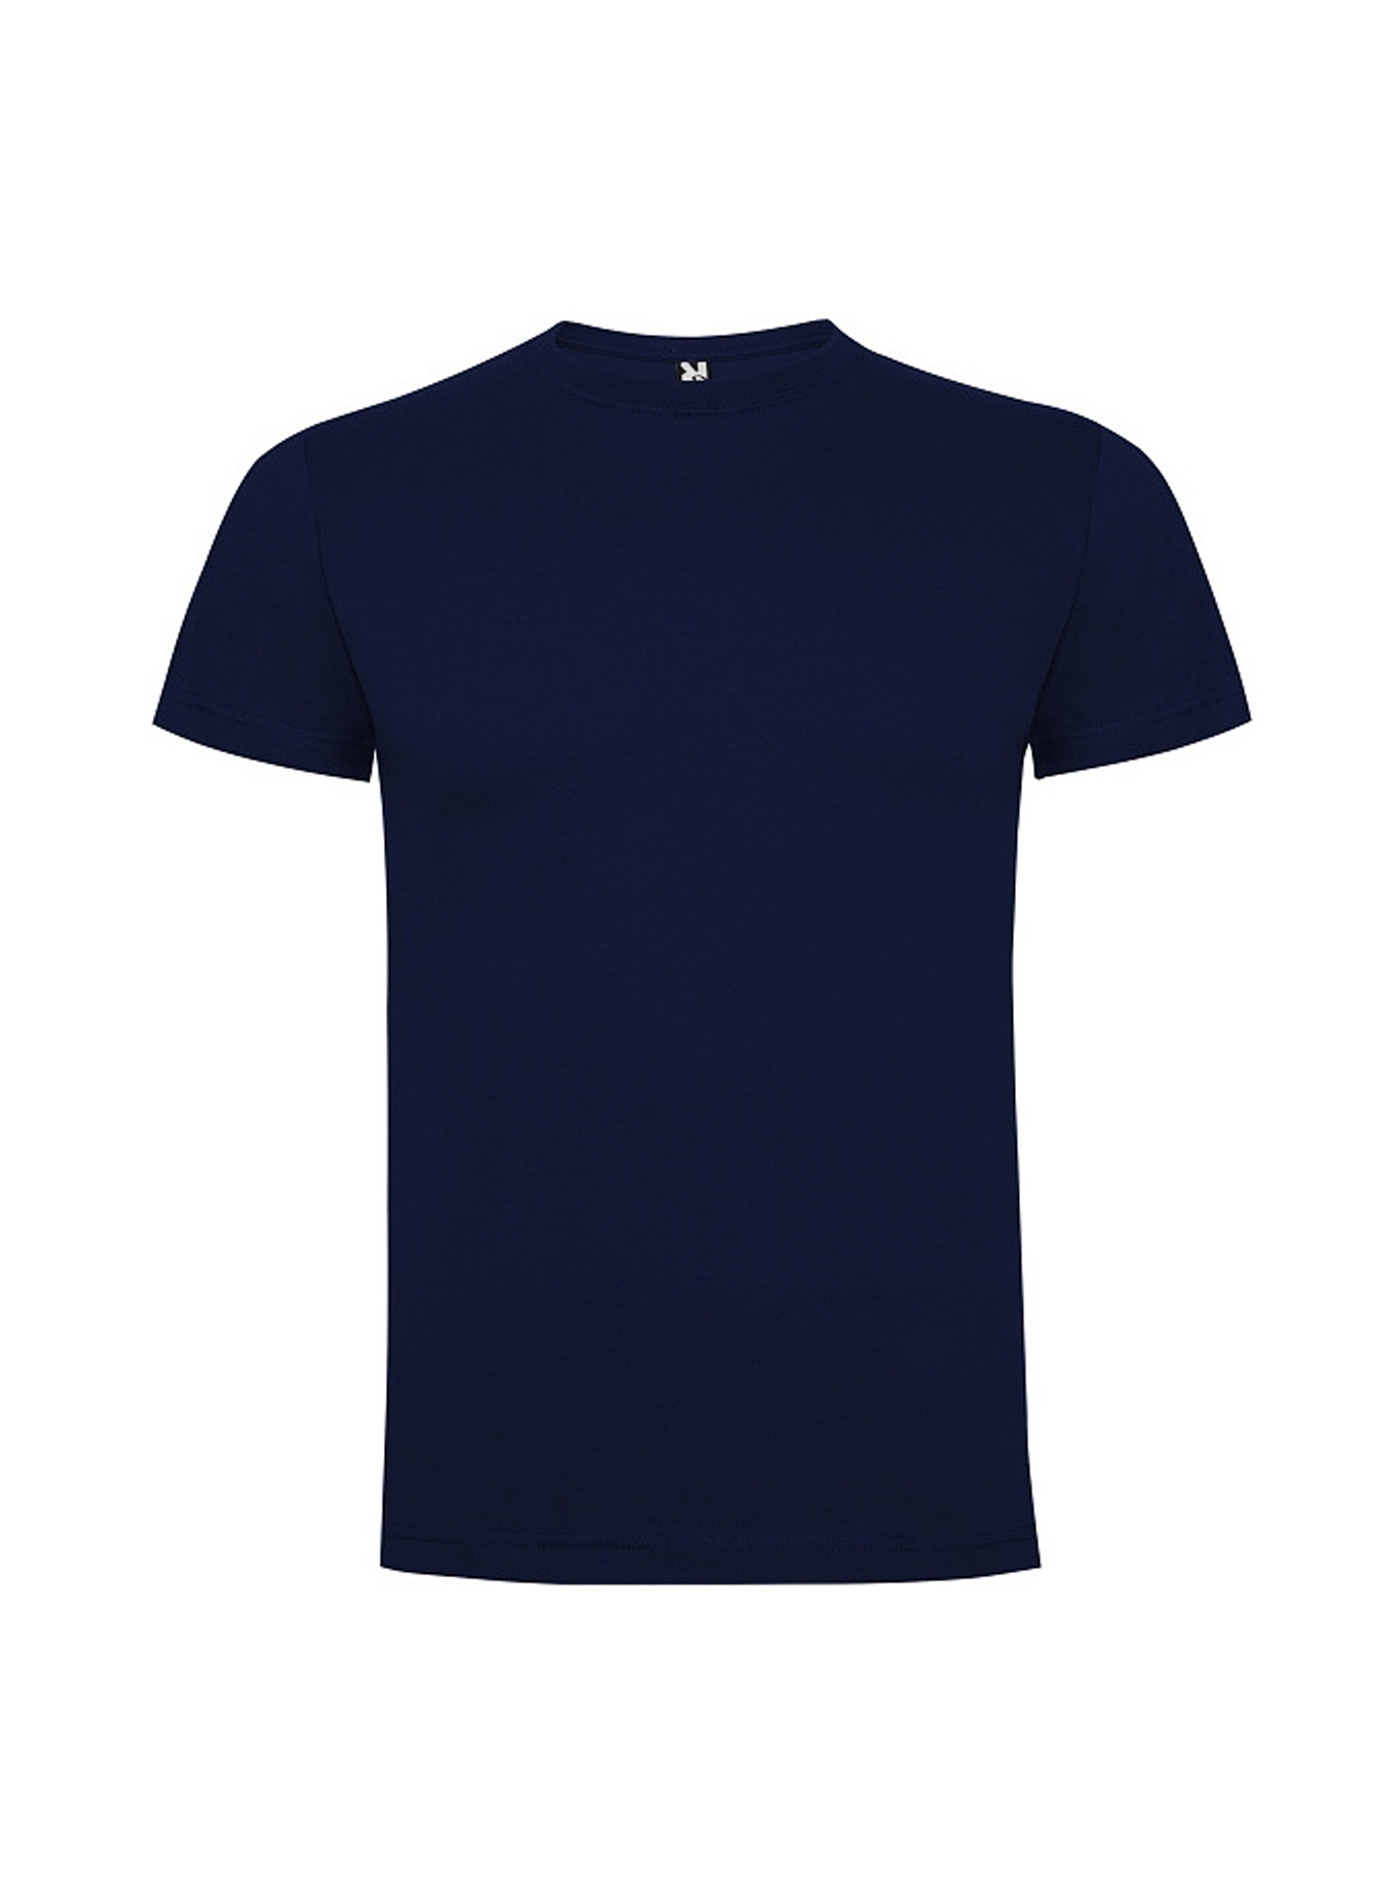 Dětské tričko Roly Dogo premium - Námořnická modrá 5-6